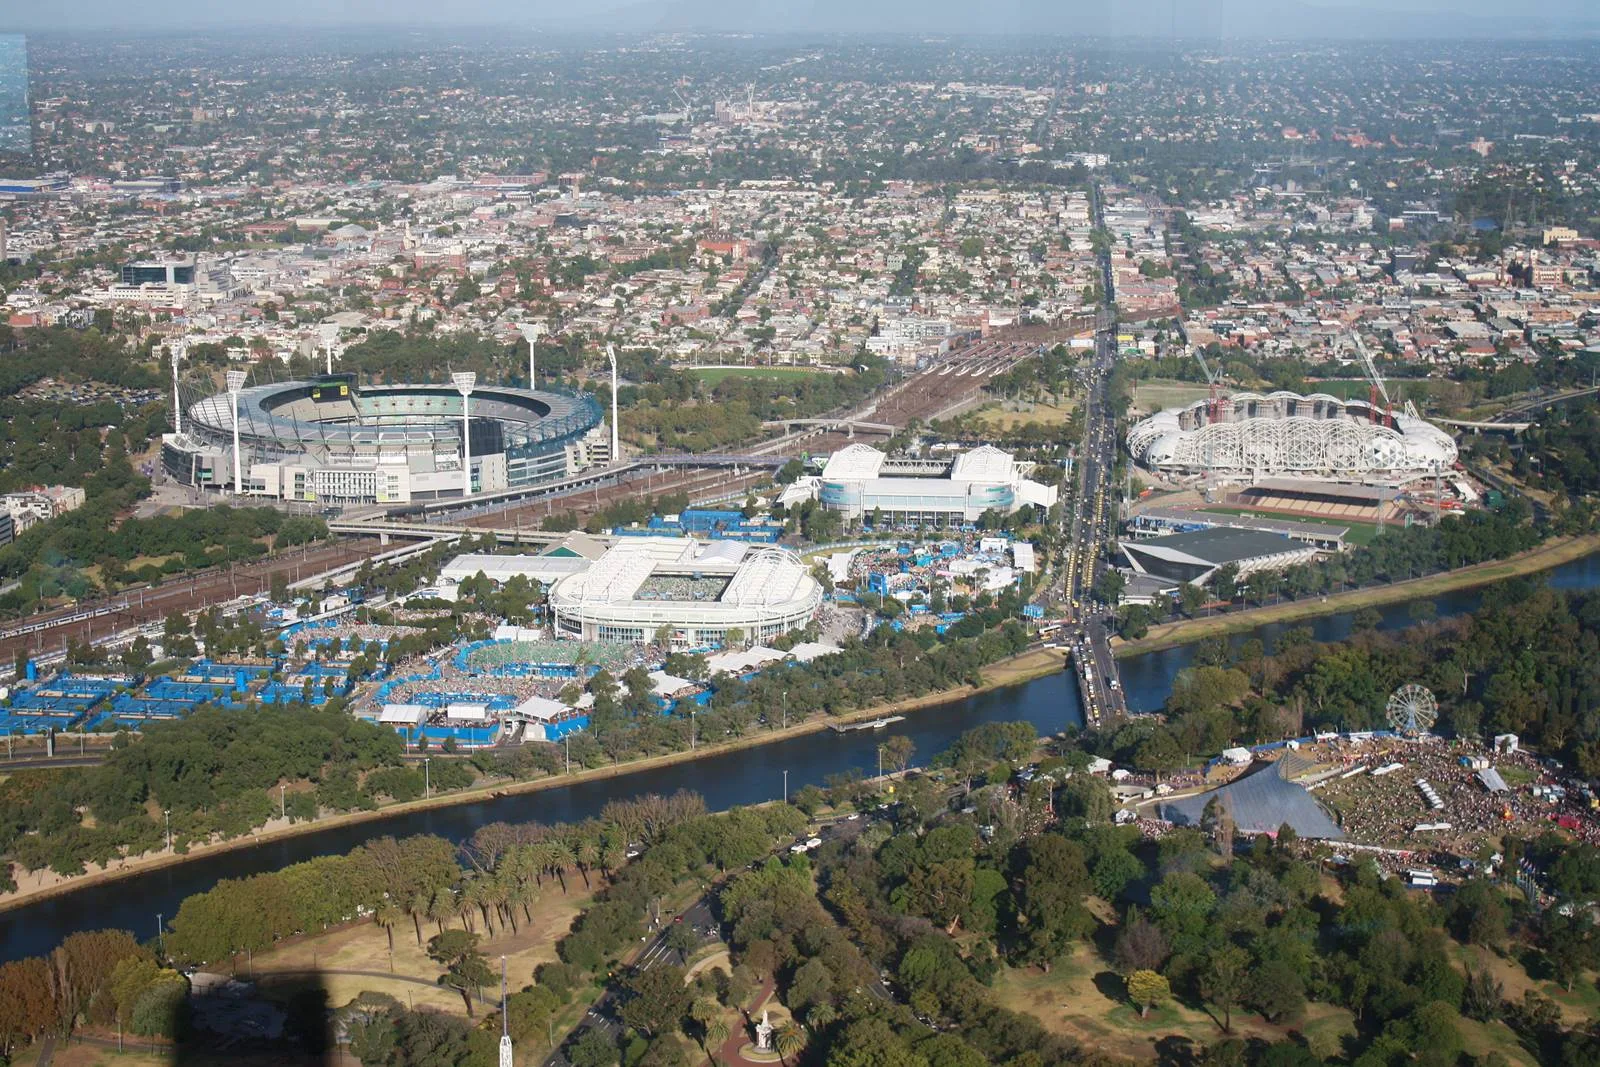 澳洲-墨爾本-市區-墨爾本景點-推薦-墨爾本公園-Melbourne Park-行程-墨爾本旅遊-墨爾本自由行-攻略-遊記-墨爾本一日遊-墨爾本必去景點-Melbourne